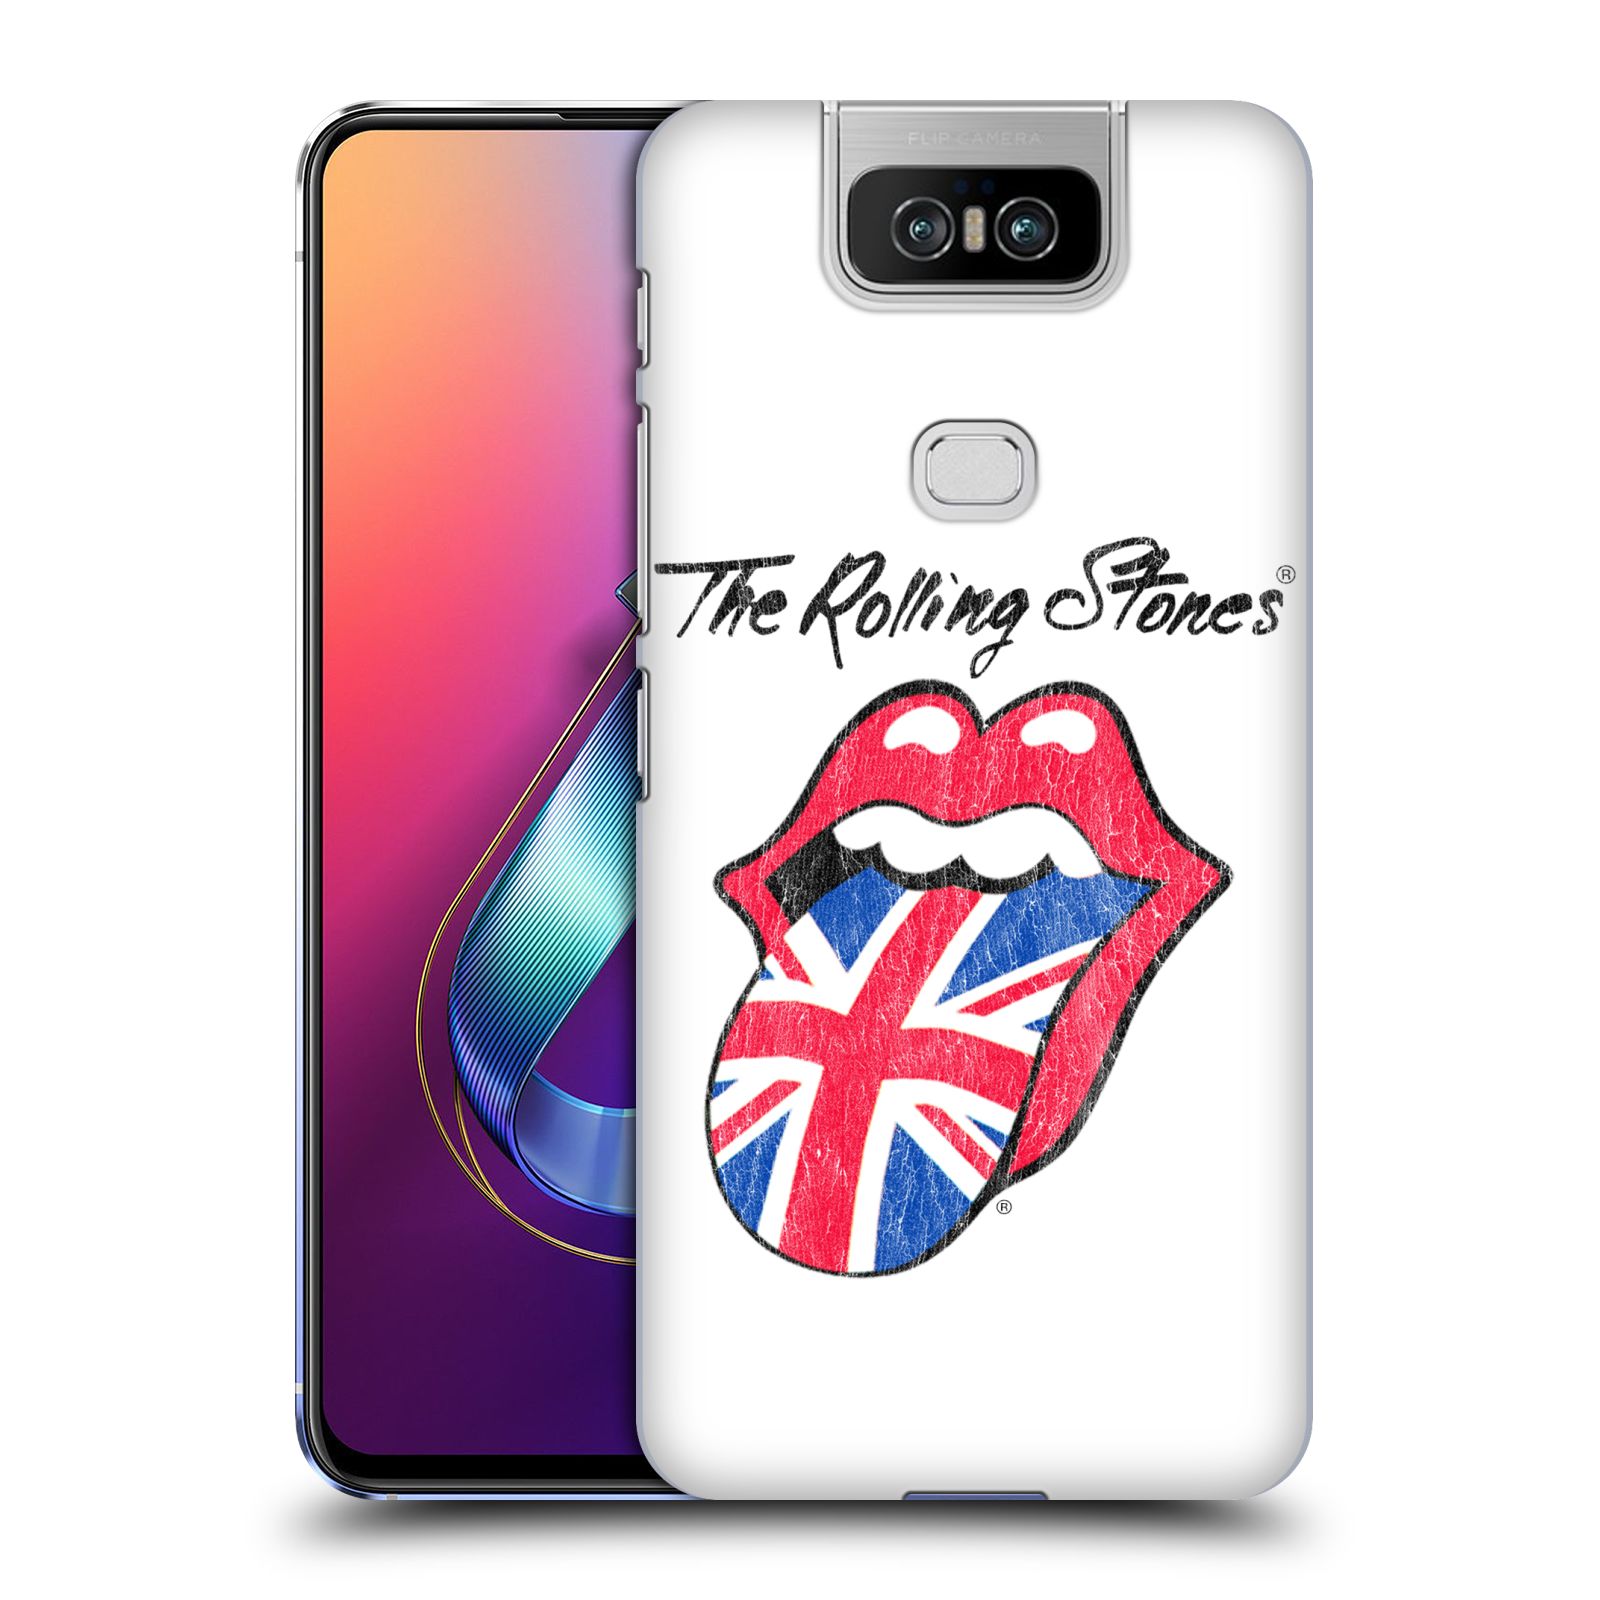 Pouzdro na mobil Asus Zenfone 6 ZS630KL - HEAD CASE - rocková skupina Rolling Stones bílé pozadí